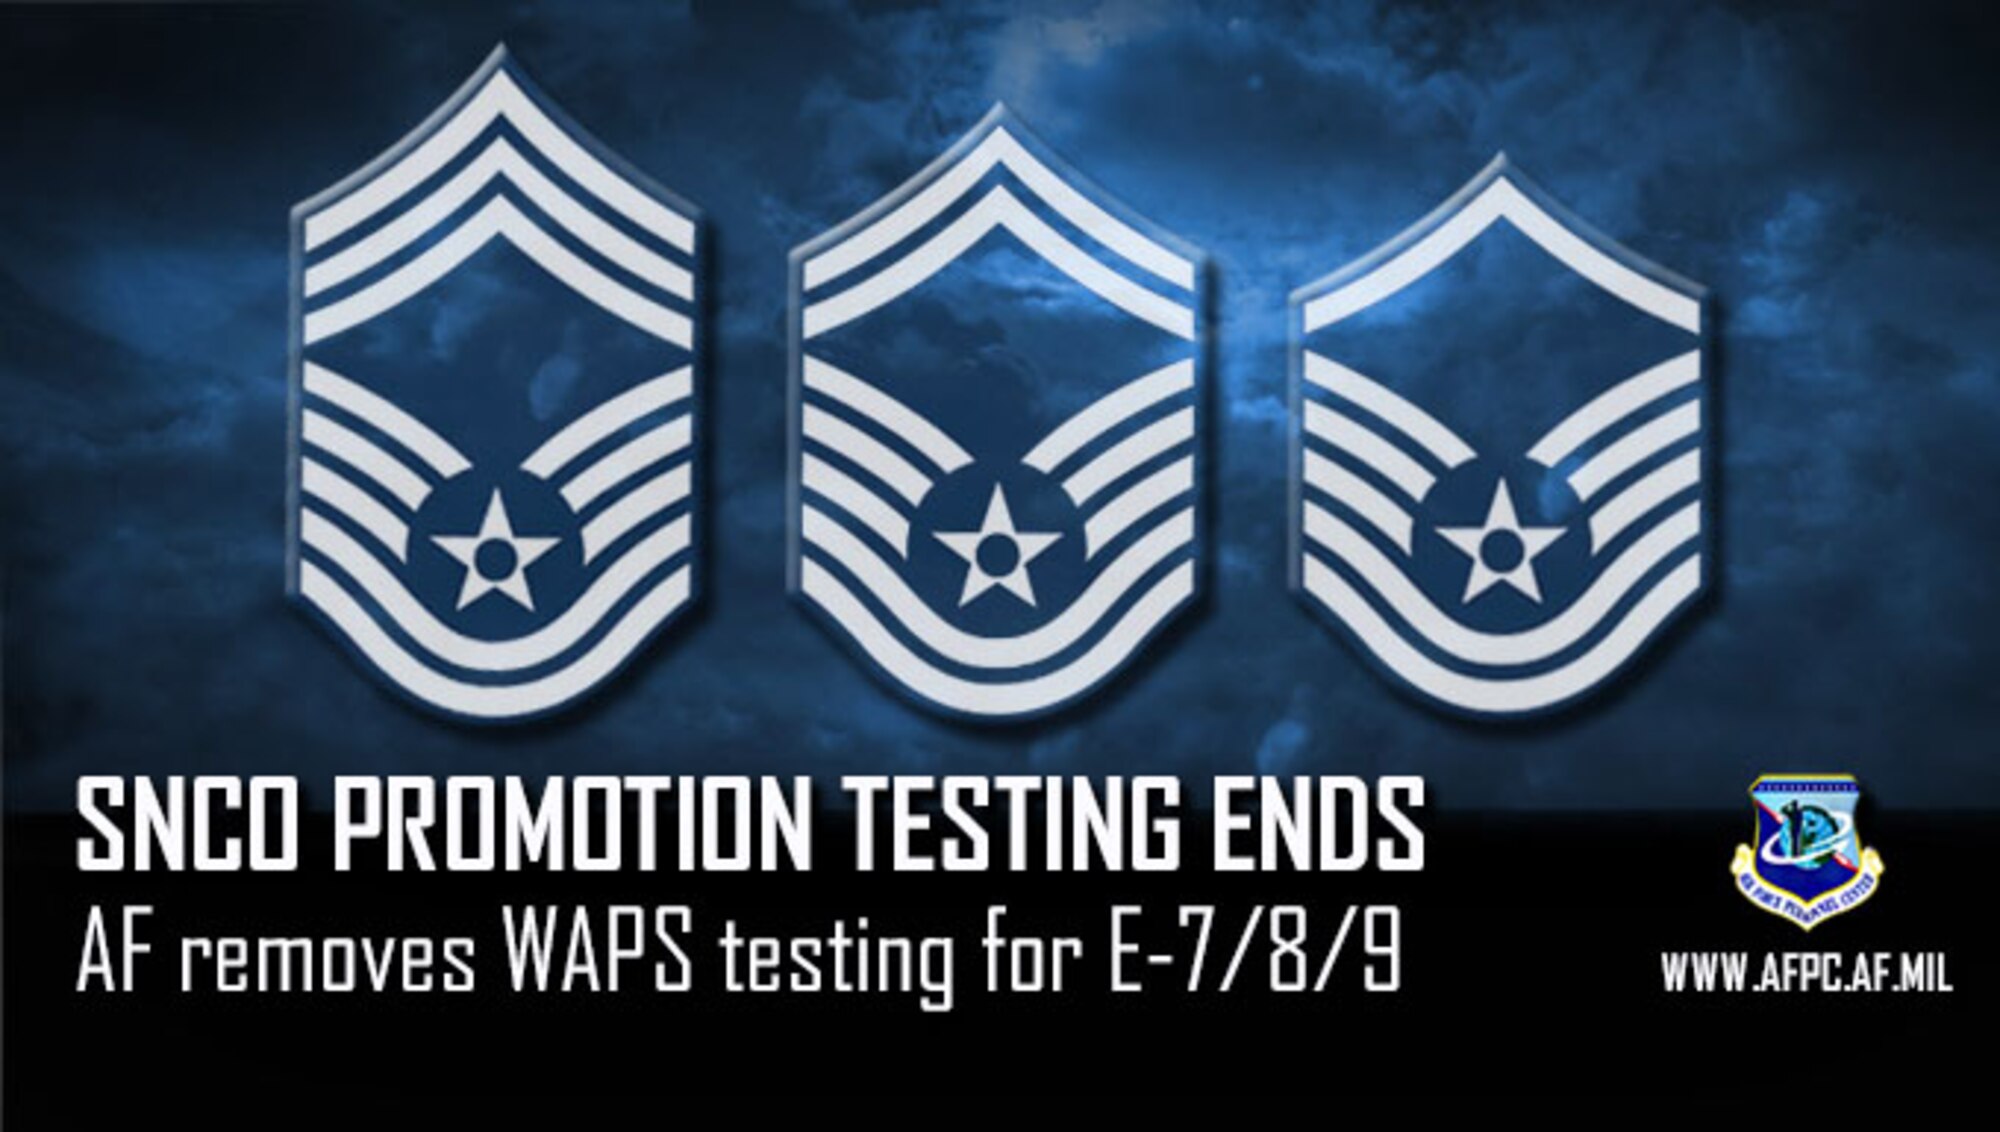 SNCO promotion testing ends; AF removes WAPS testing for E-7/8/9